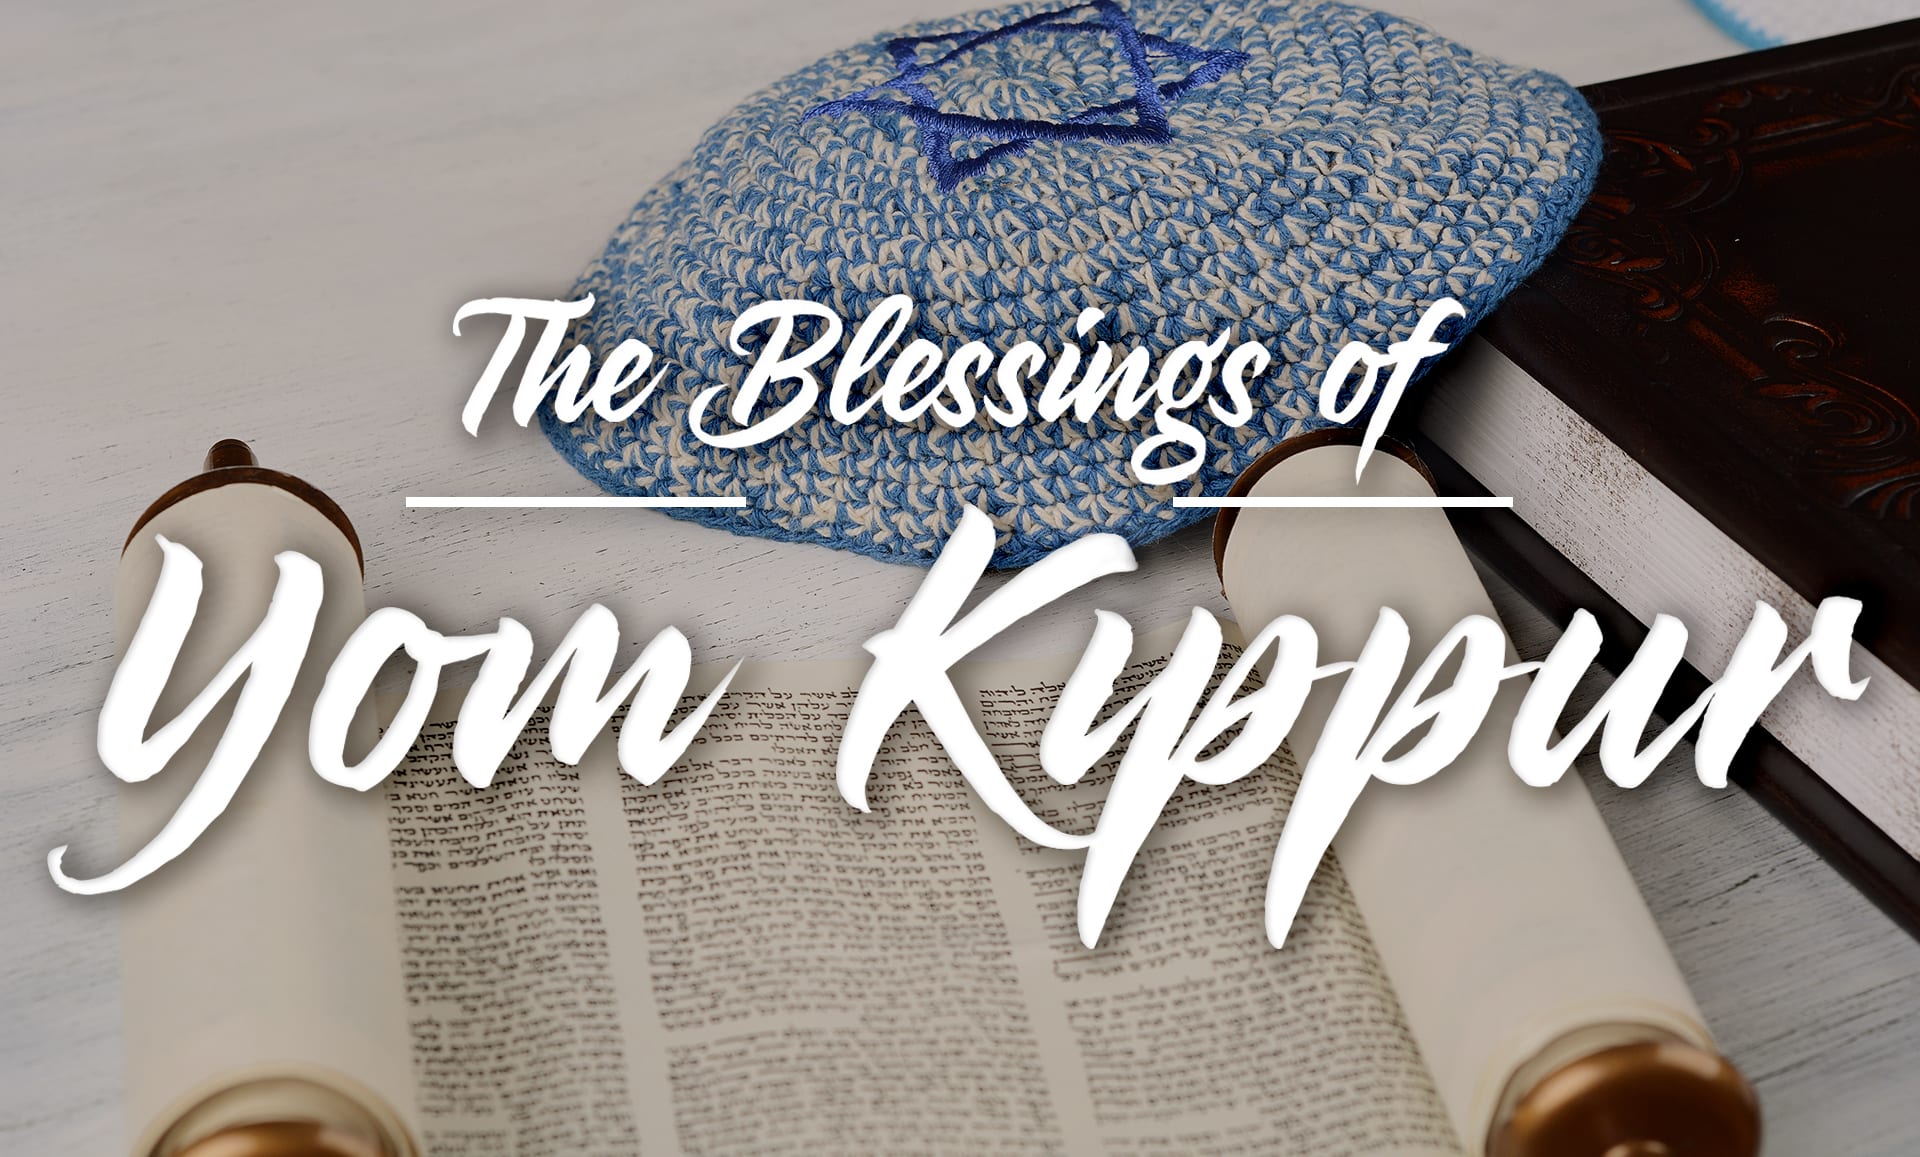 The Blessings of Yom Kippur